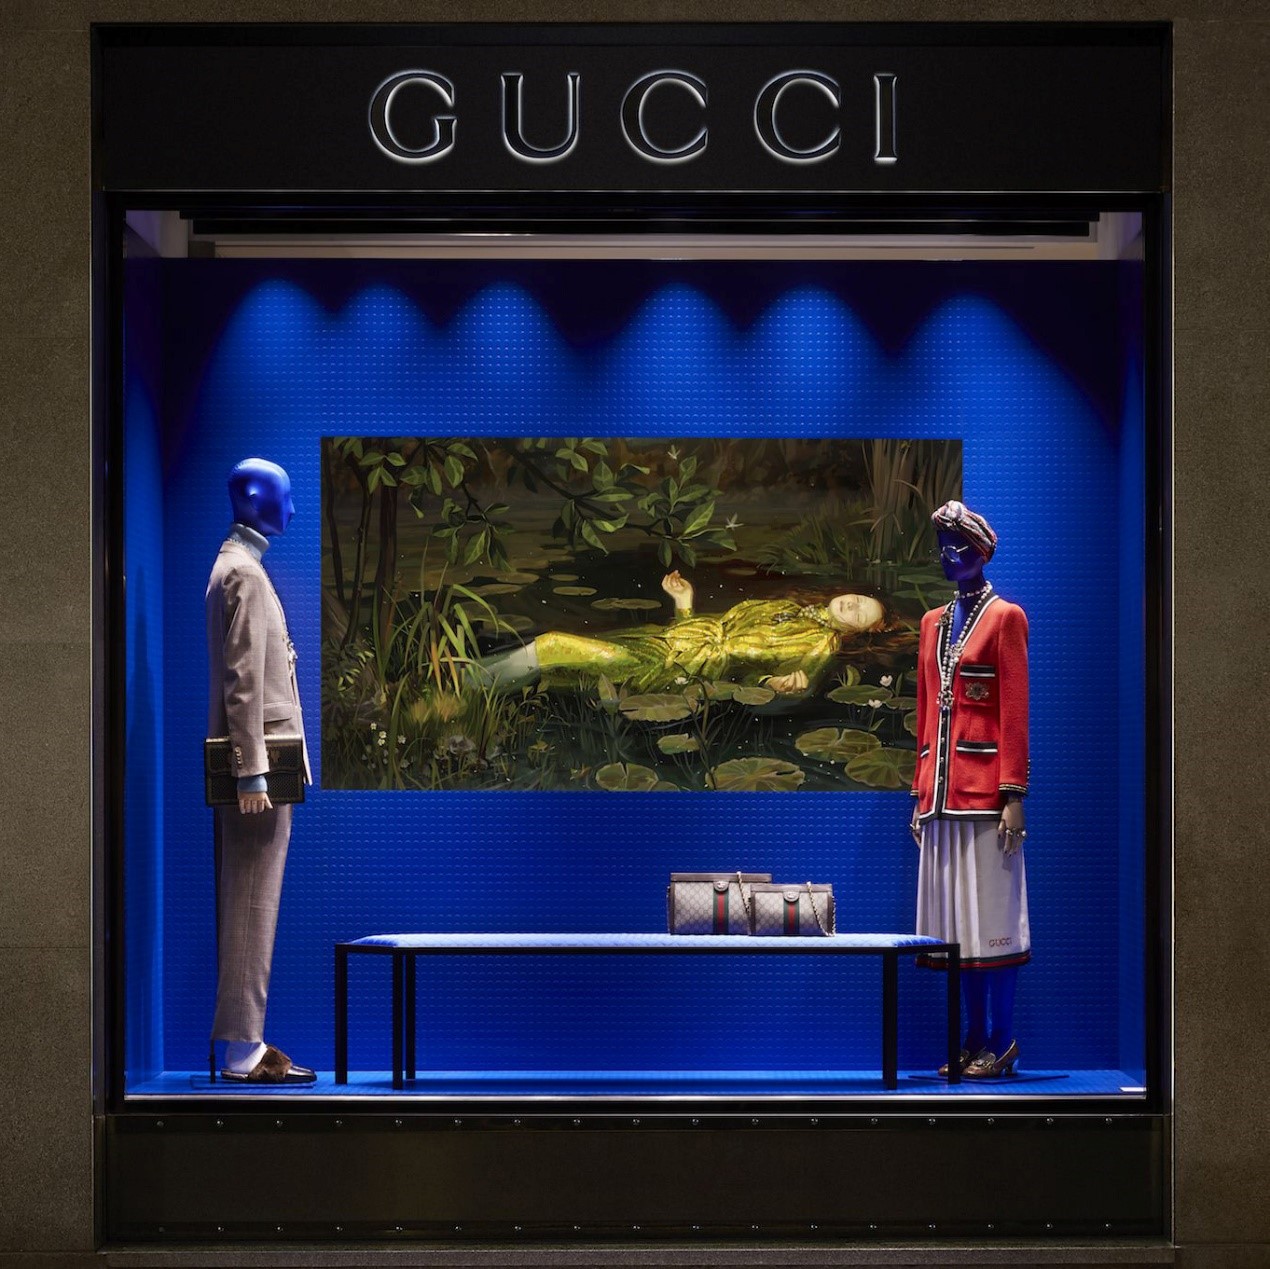 超现实主义艺术和Gucci擦出了怎样的火花